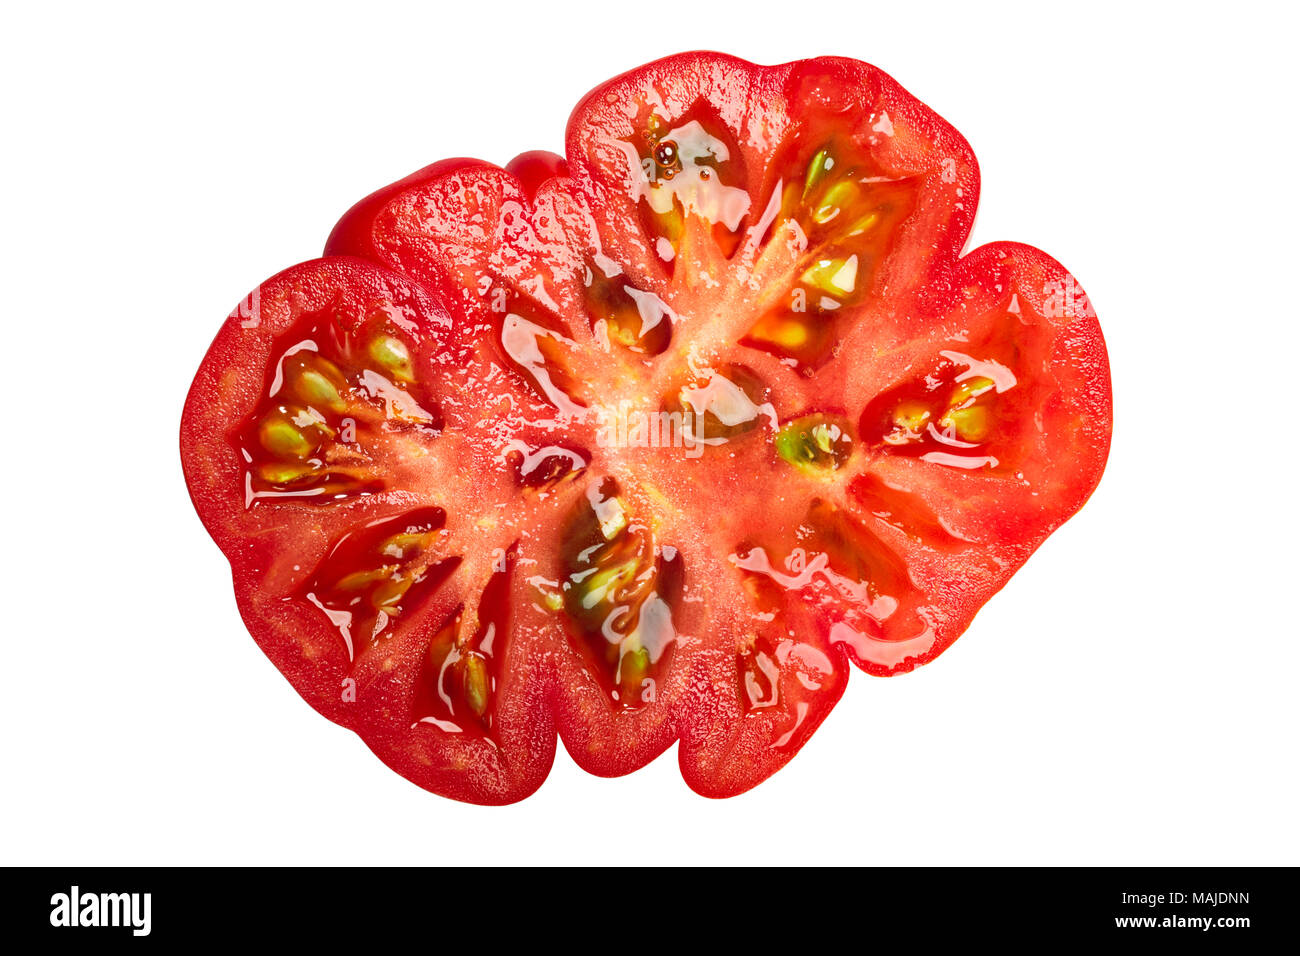 Costoluto di Parma cimelio nervata fetta di pomodoro, vista dall'alto Foto Stock